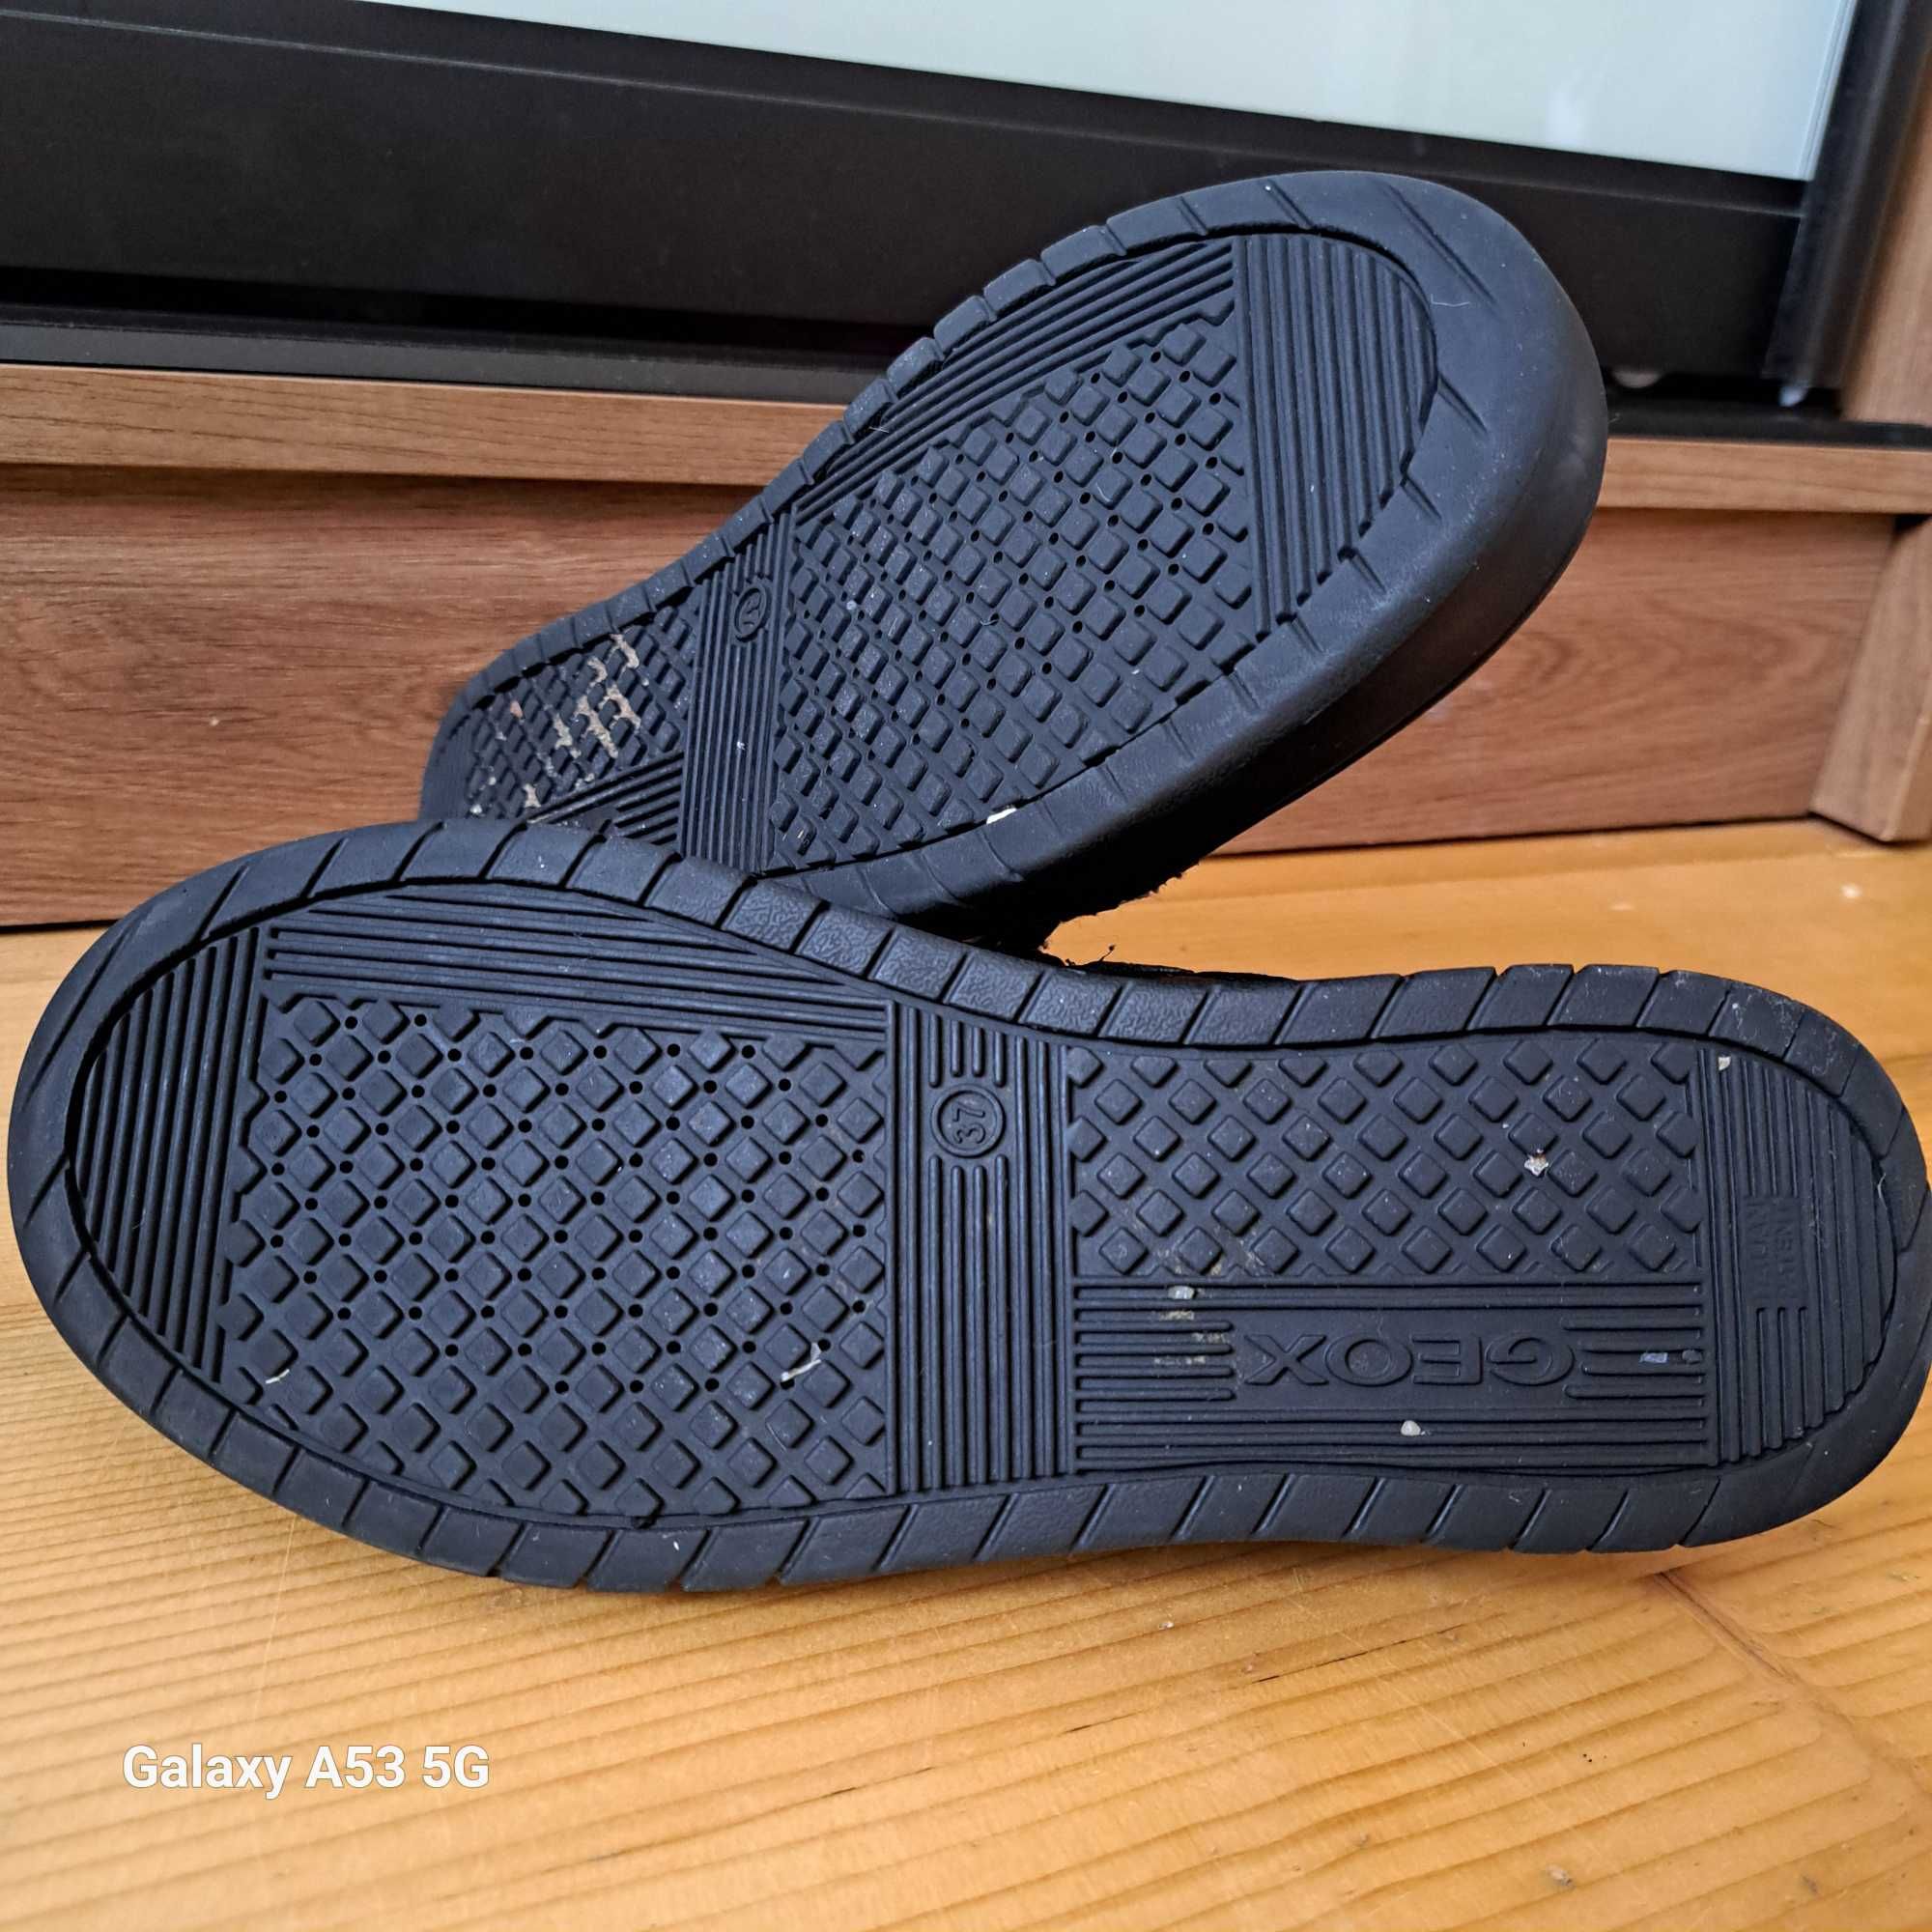 Шкіряні кросівки спортивні туфлі напівчеревики Geox для хлопця 37 р